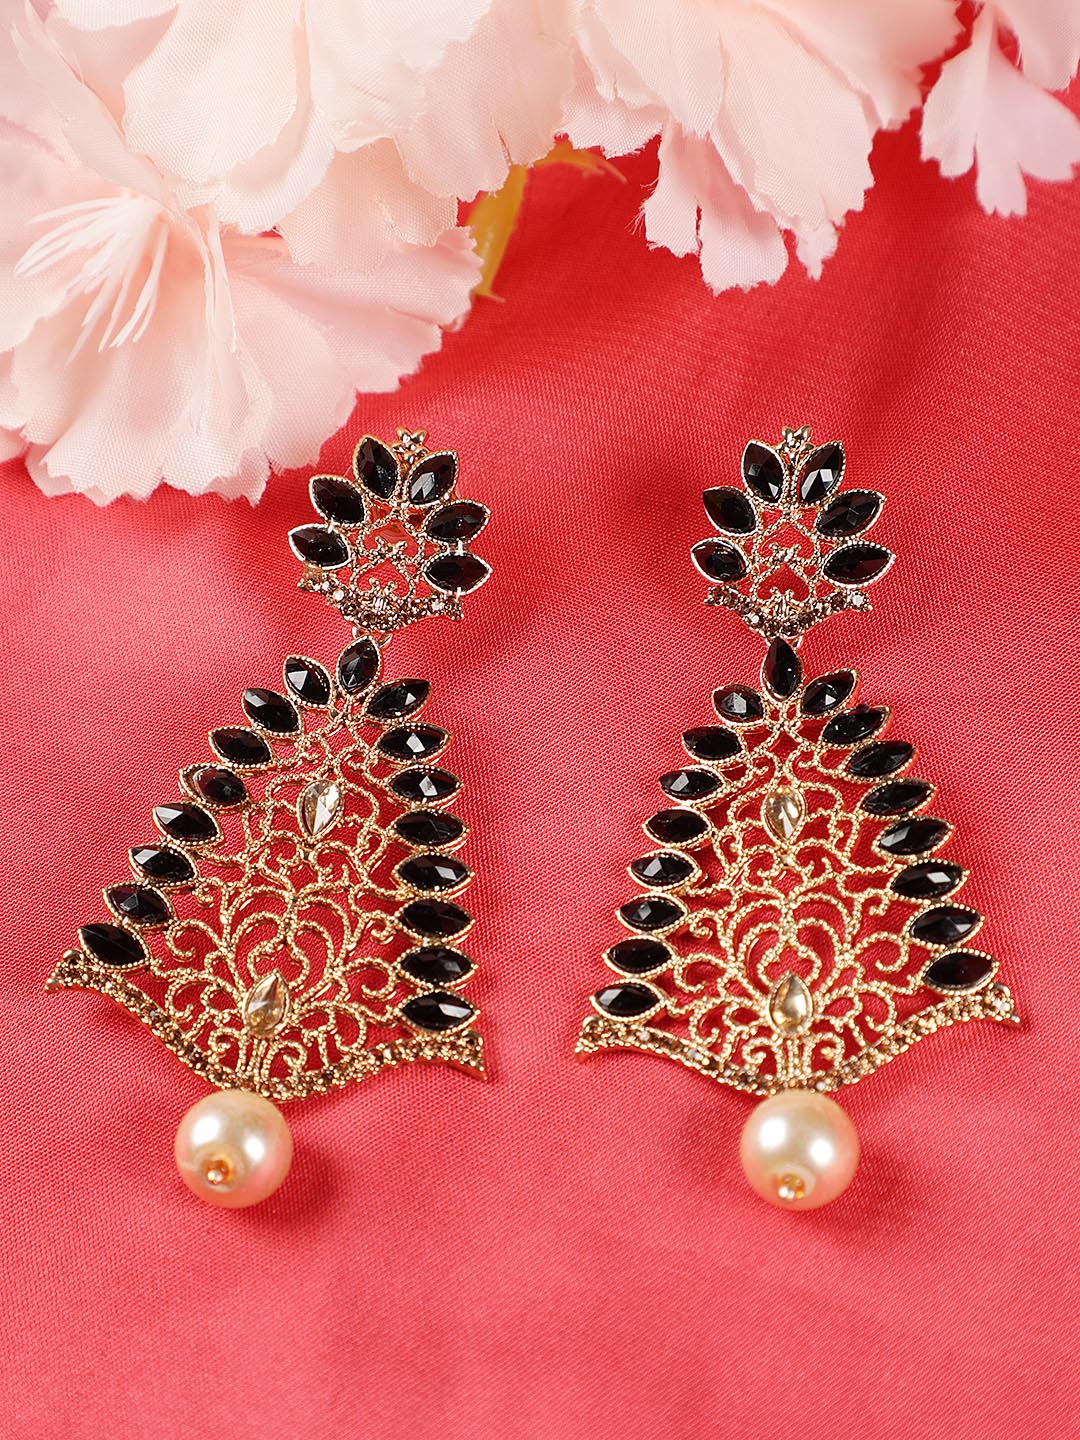 Buy Black Enamel Chand Motif Kundan Earrings for Women Online at Ajnaa  Jewels |391483